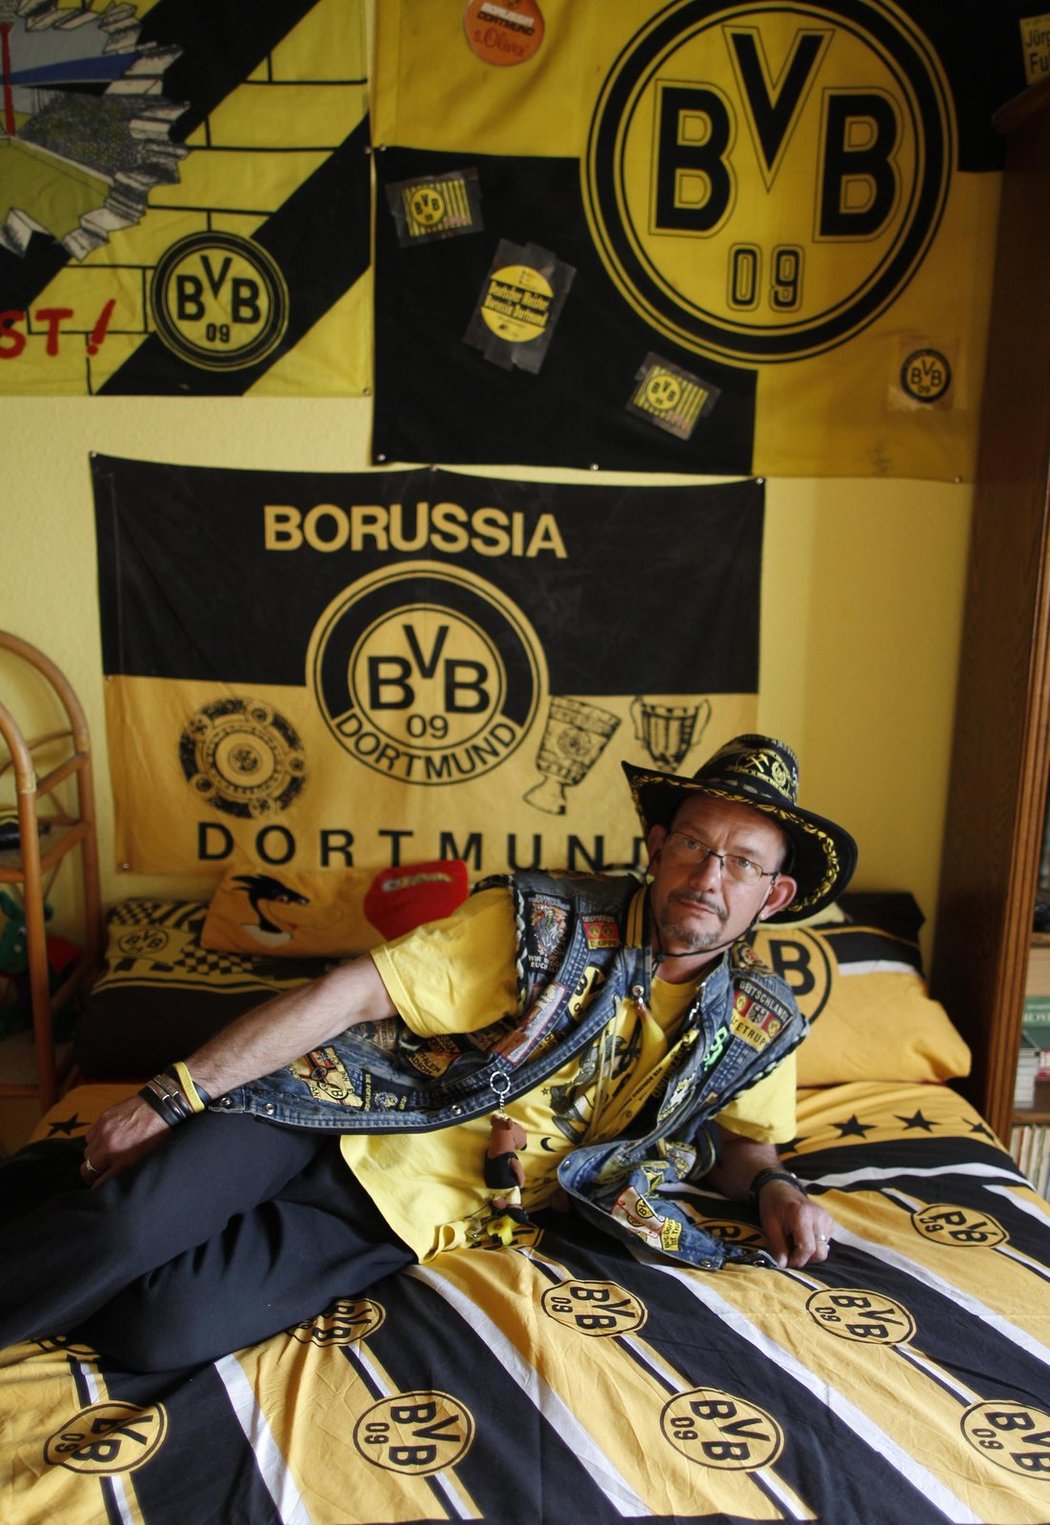 Povlečení, dresy, vlajky, plakáty... Fanoušek Borussie Dortmund má v srdci jen svůj milovaný klub